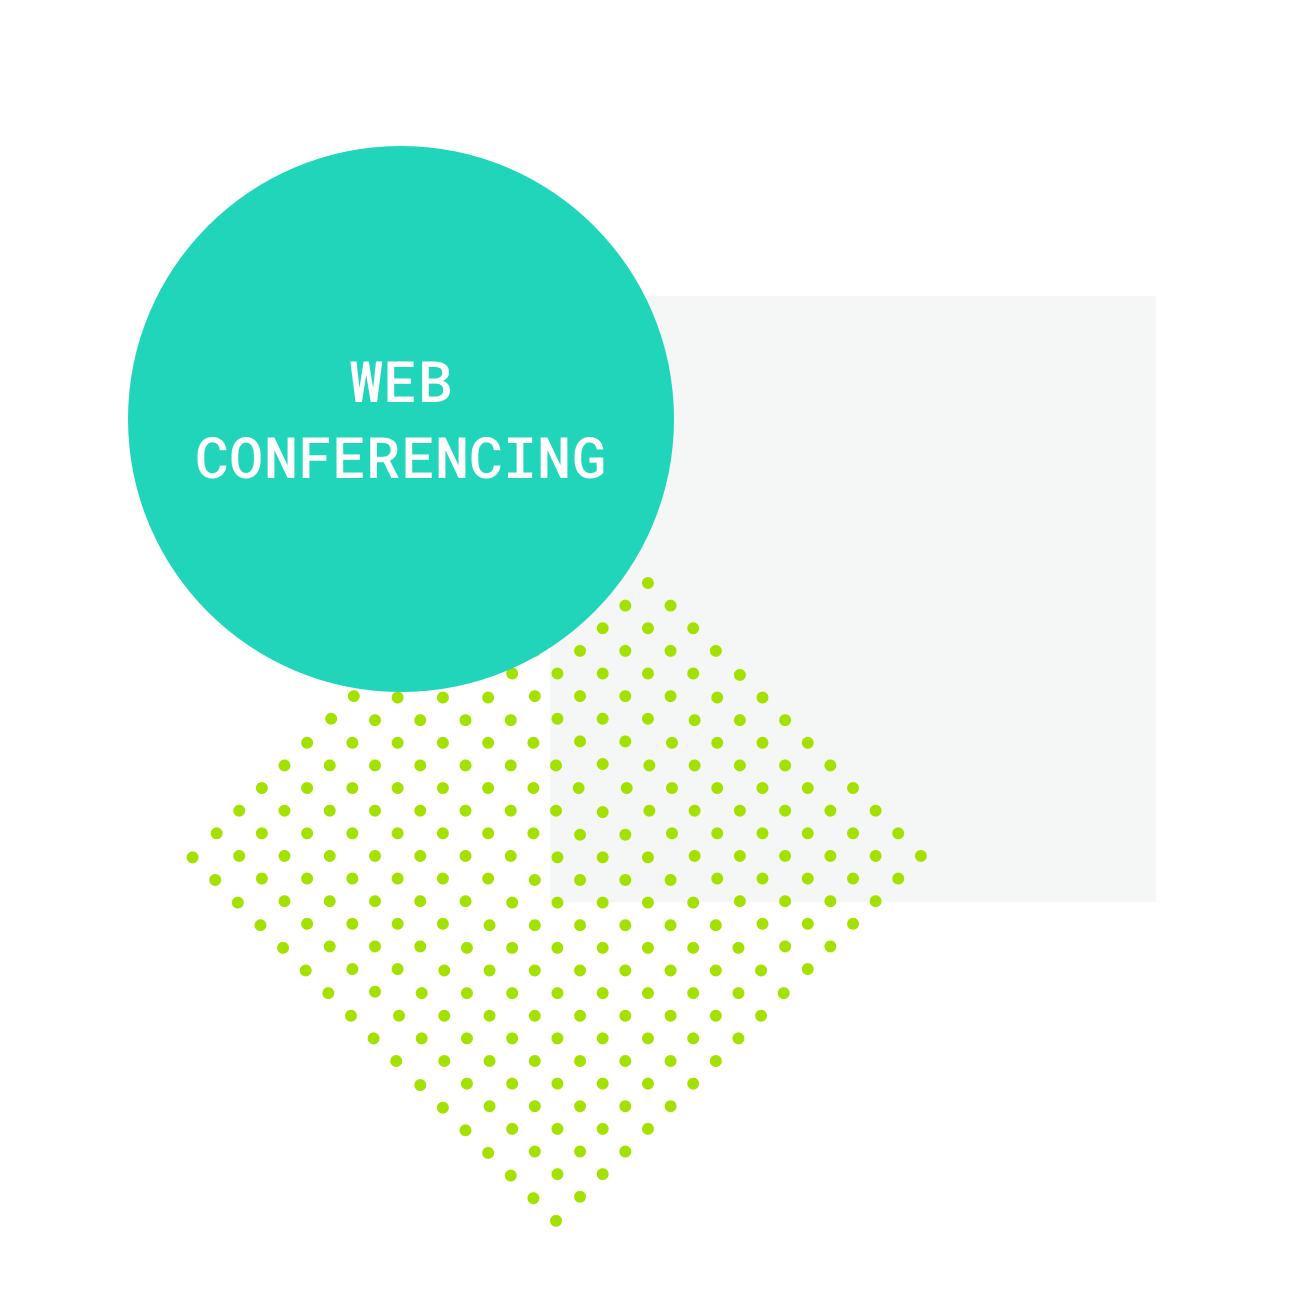 Web Conferencing tweet image